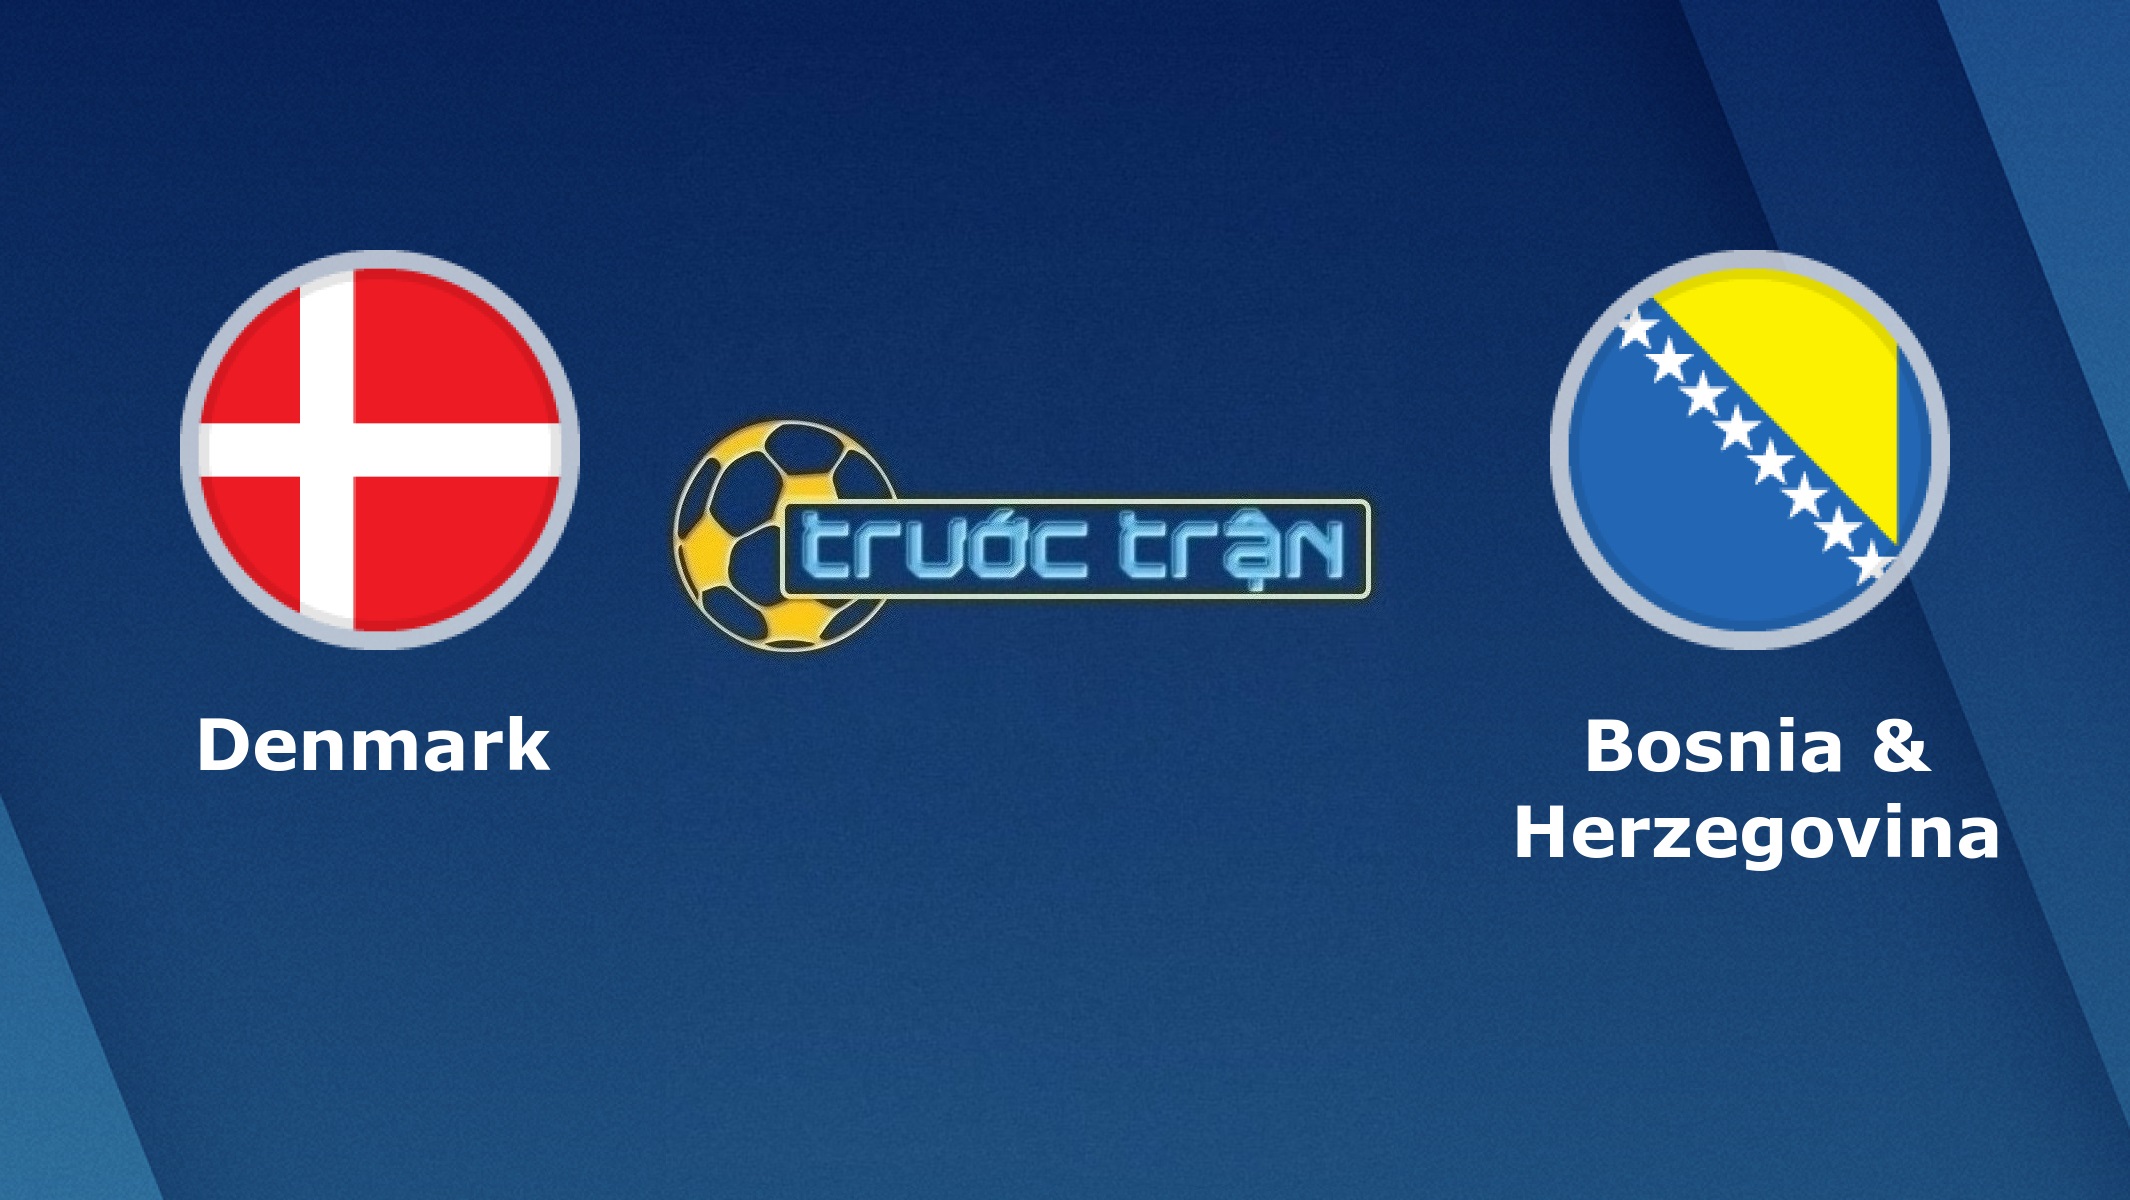 Đan Mạch vs Bosna và Hercegovina – Tip kèo bóng đá hôm nay – 23h00 06/06/2021